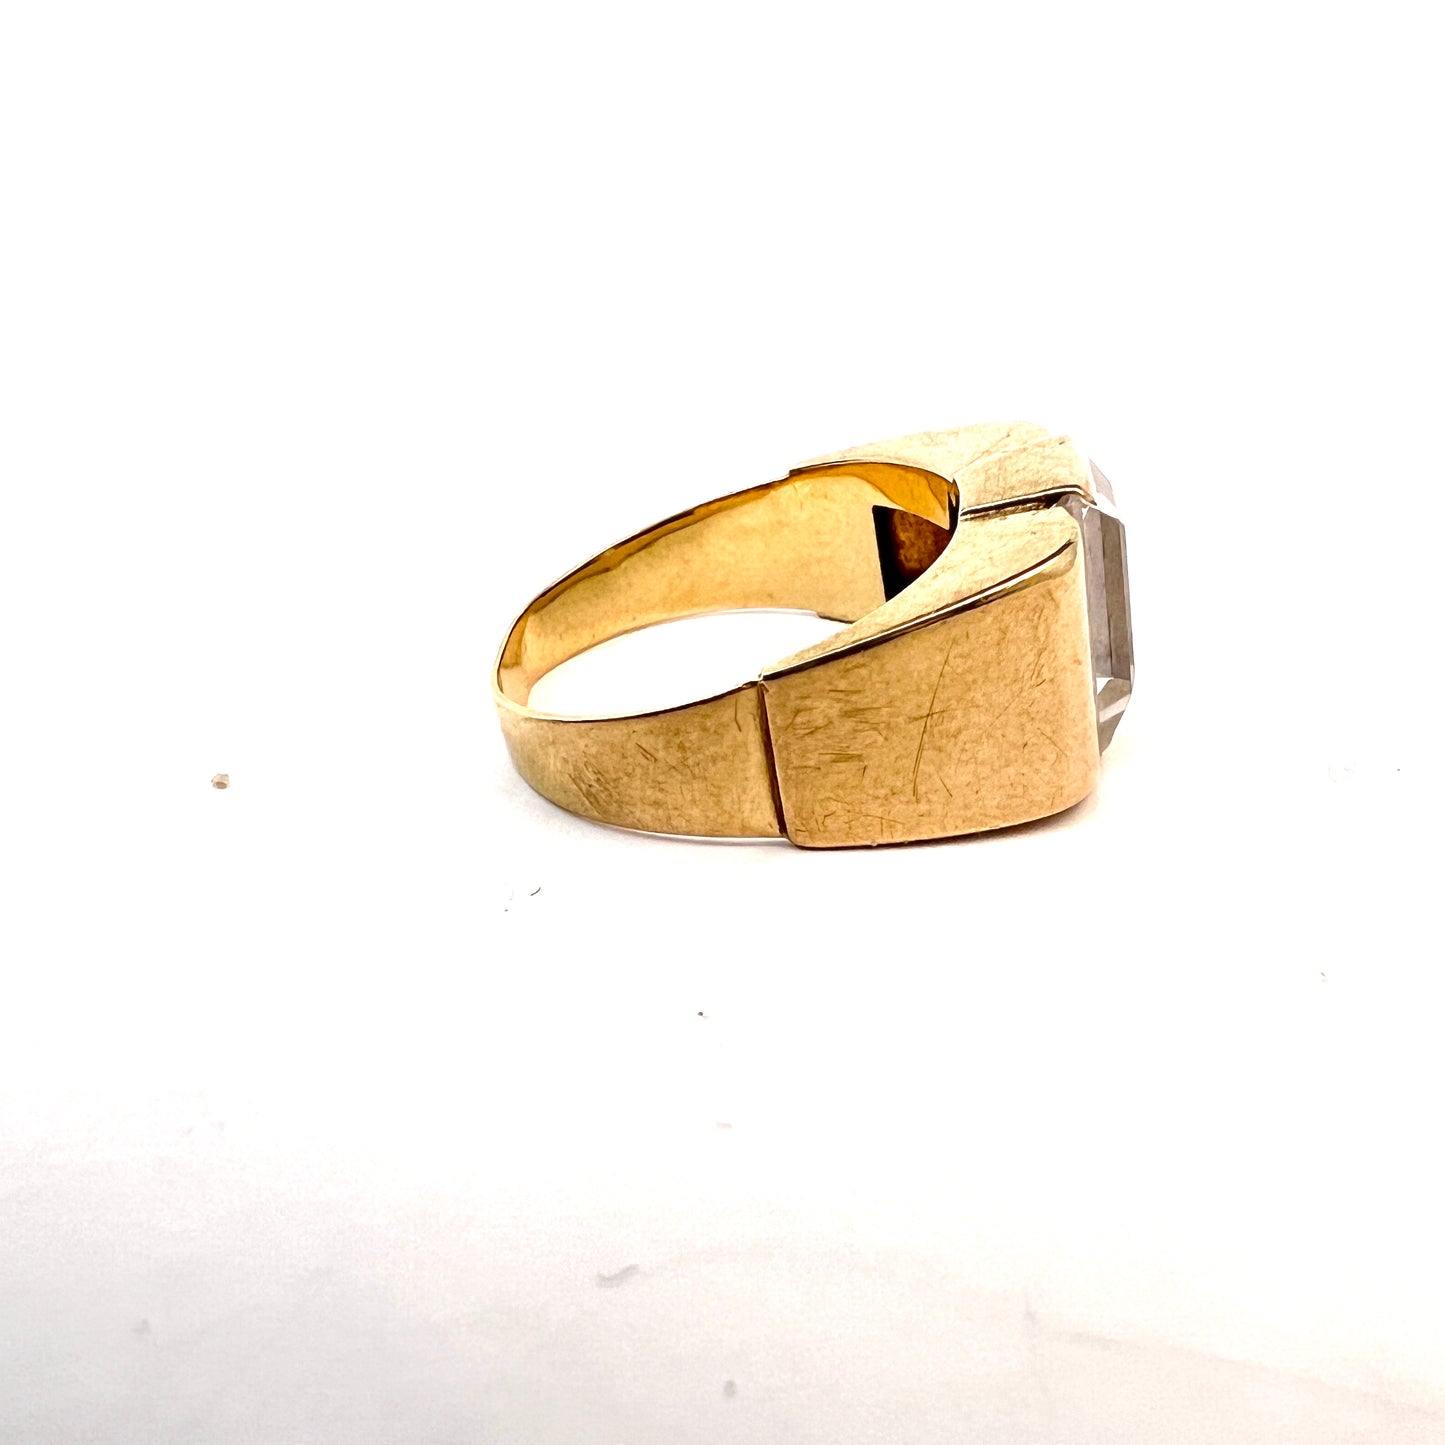 Hallberg, Sweden 1952. Vintage 18k Gold Rock Crystal Tank Ring.